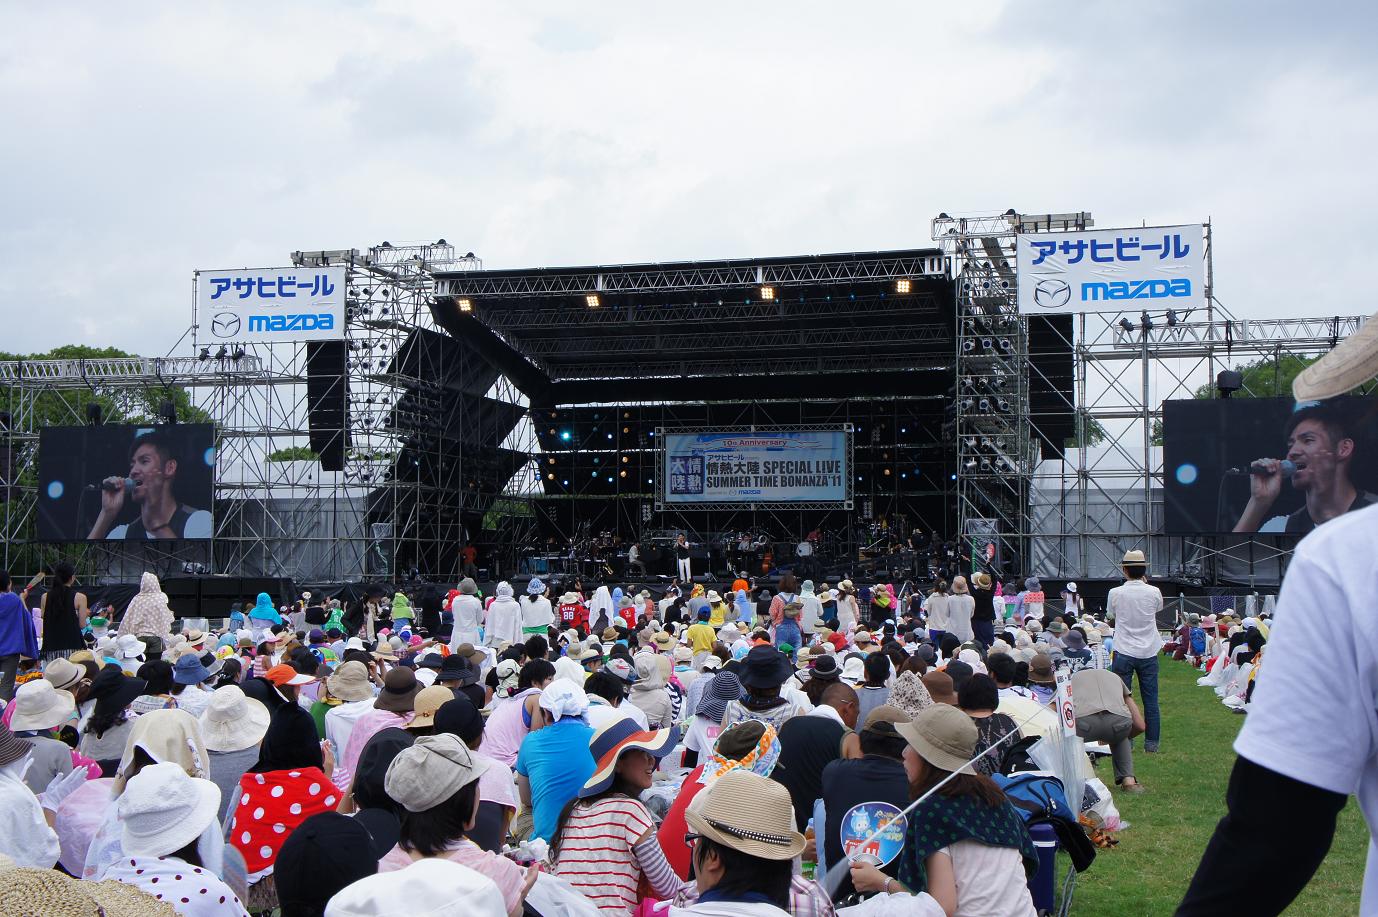 情熱大陸 Special Live Summer Time Bonanza 11大阪が開催されました Setting Sun Sound Festival In Amami